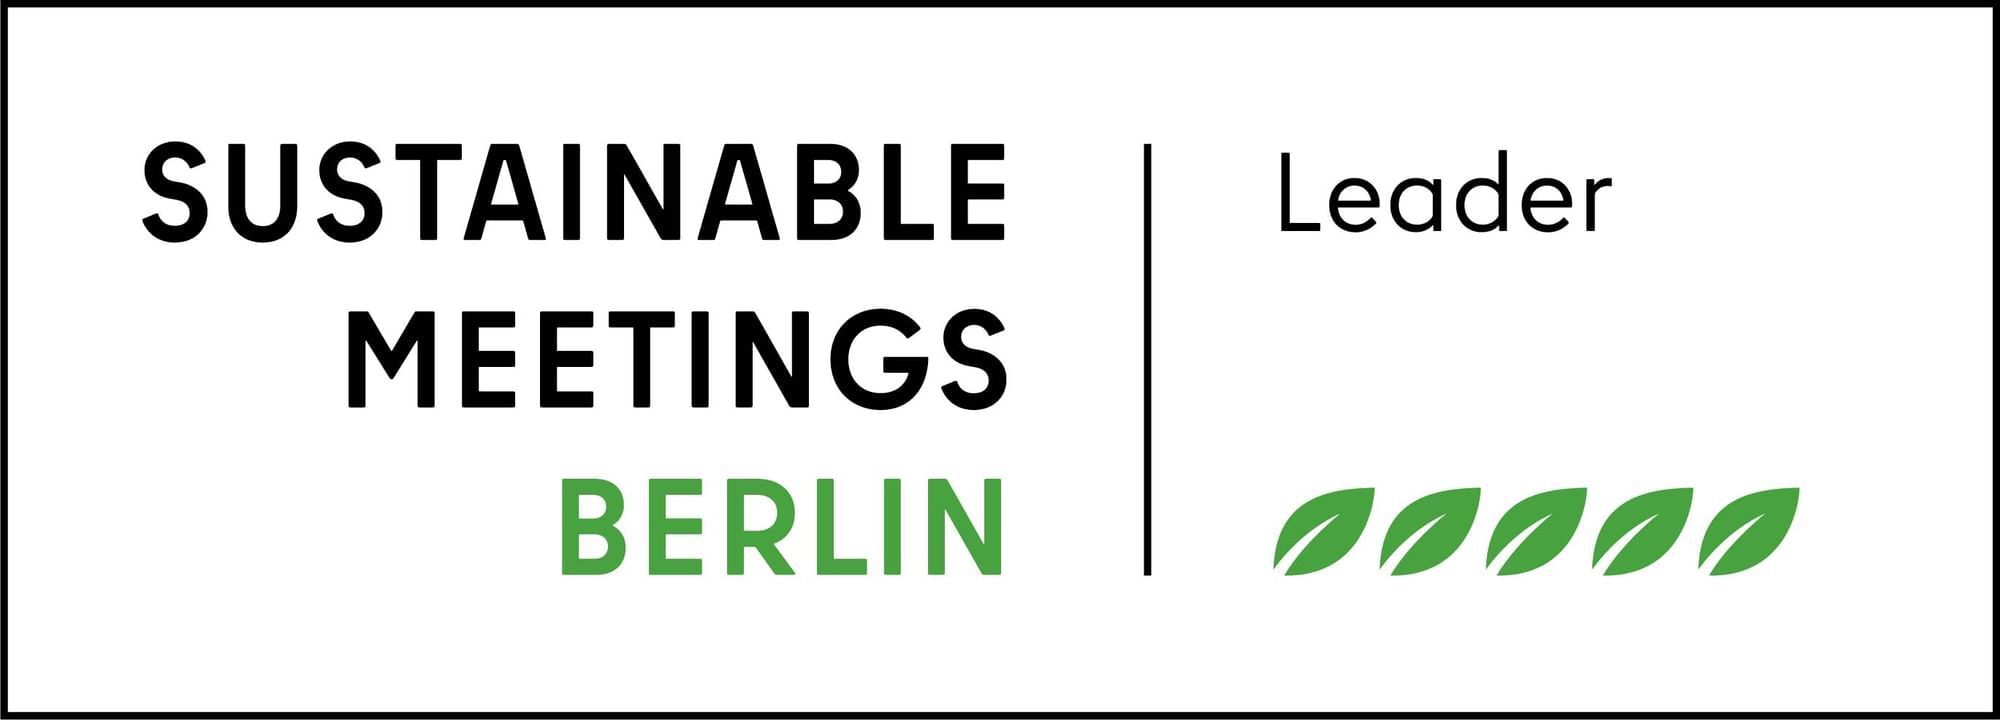 visitBerlin Sustainable Meetings Partner Level Leader